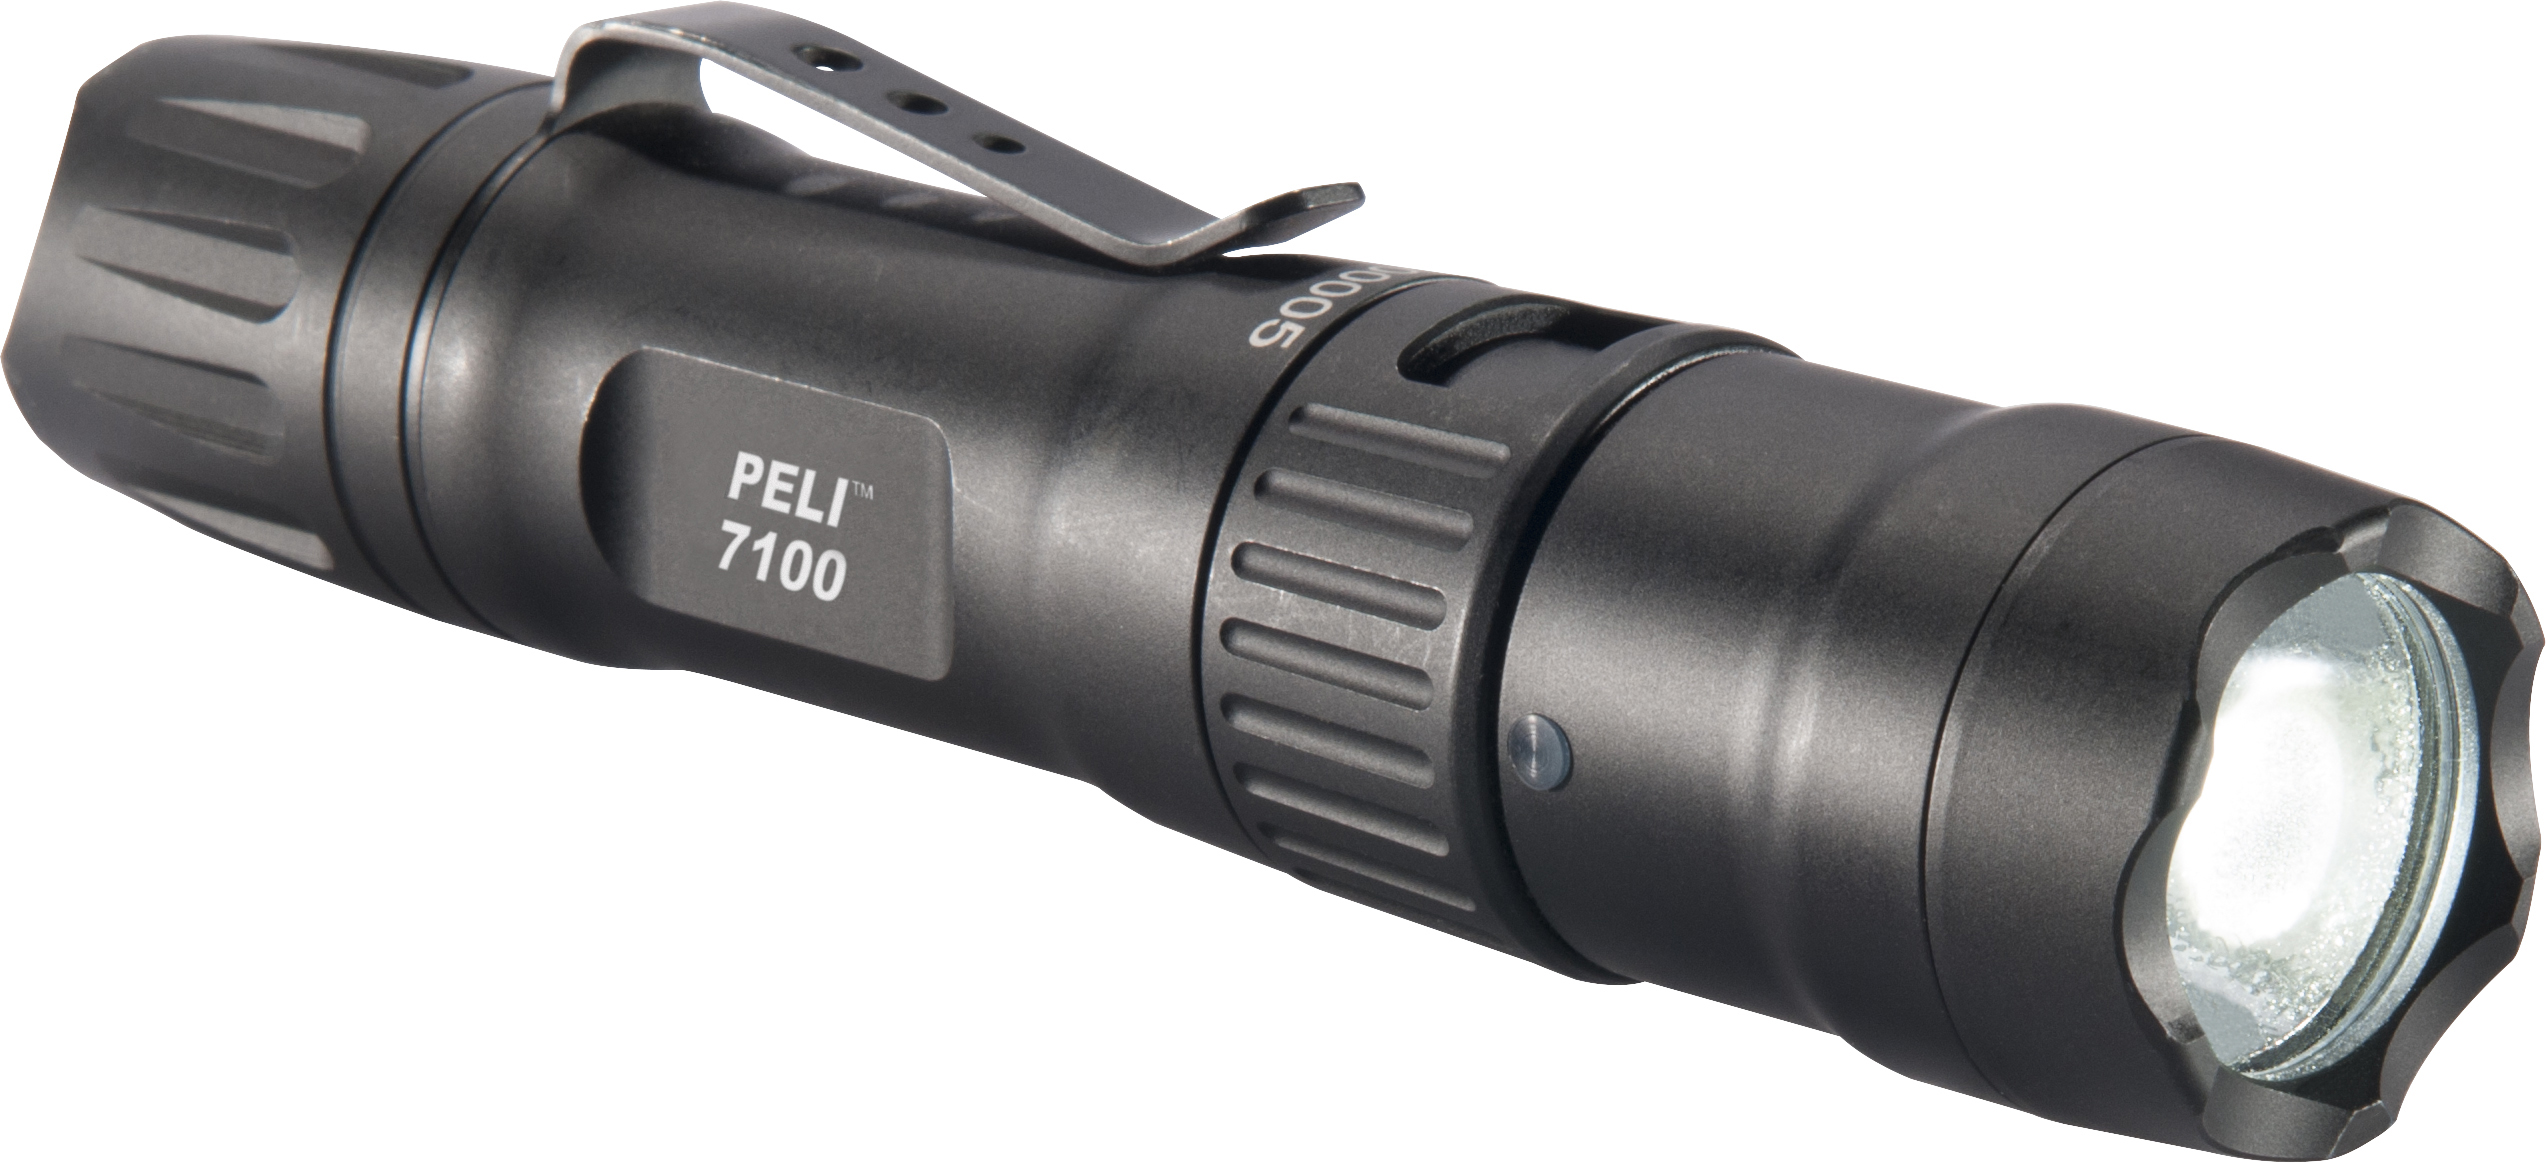 Peli 7100 tactical light (1)